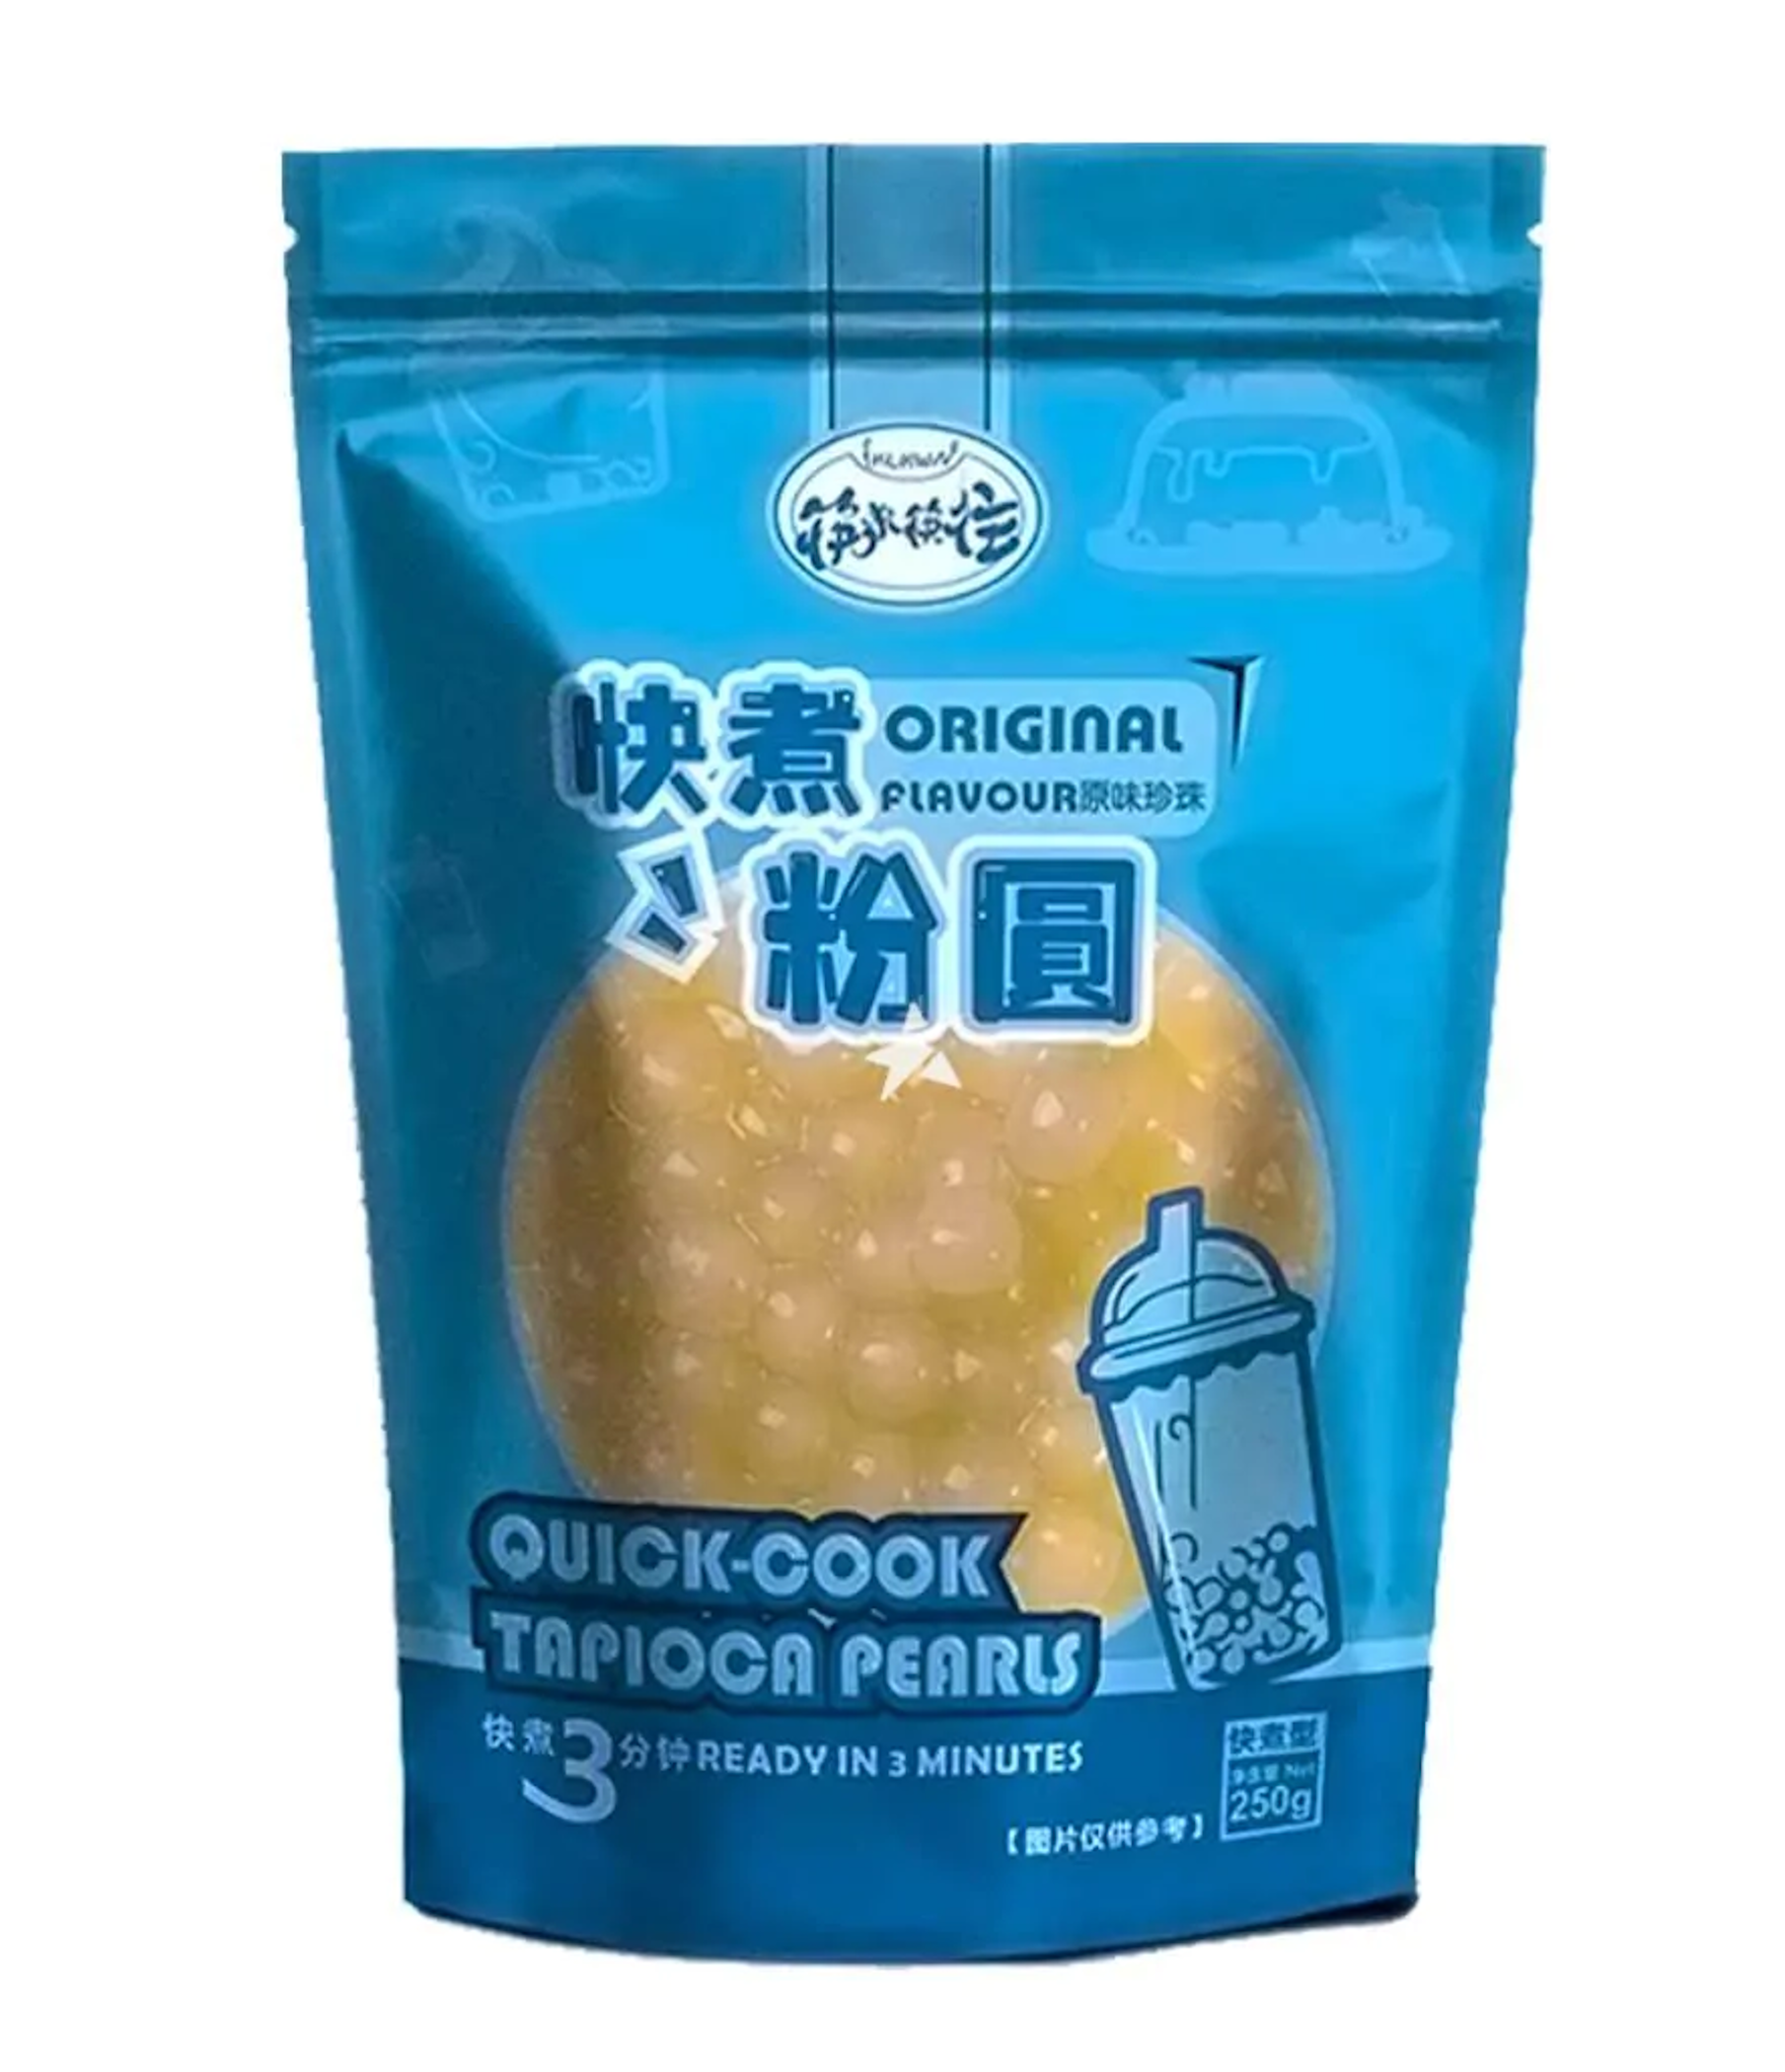 KLKW Quick-Cook Tapioca Pearls Original Flavour 250g